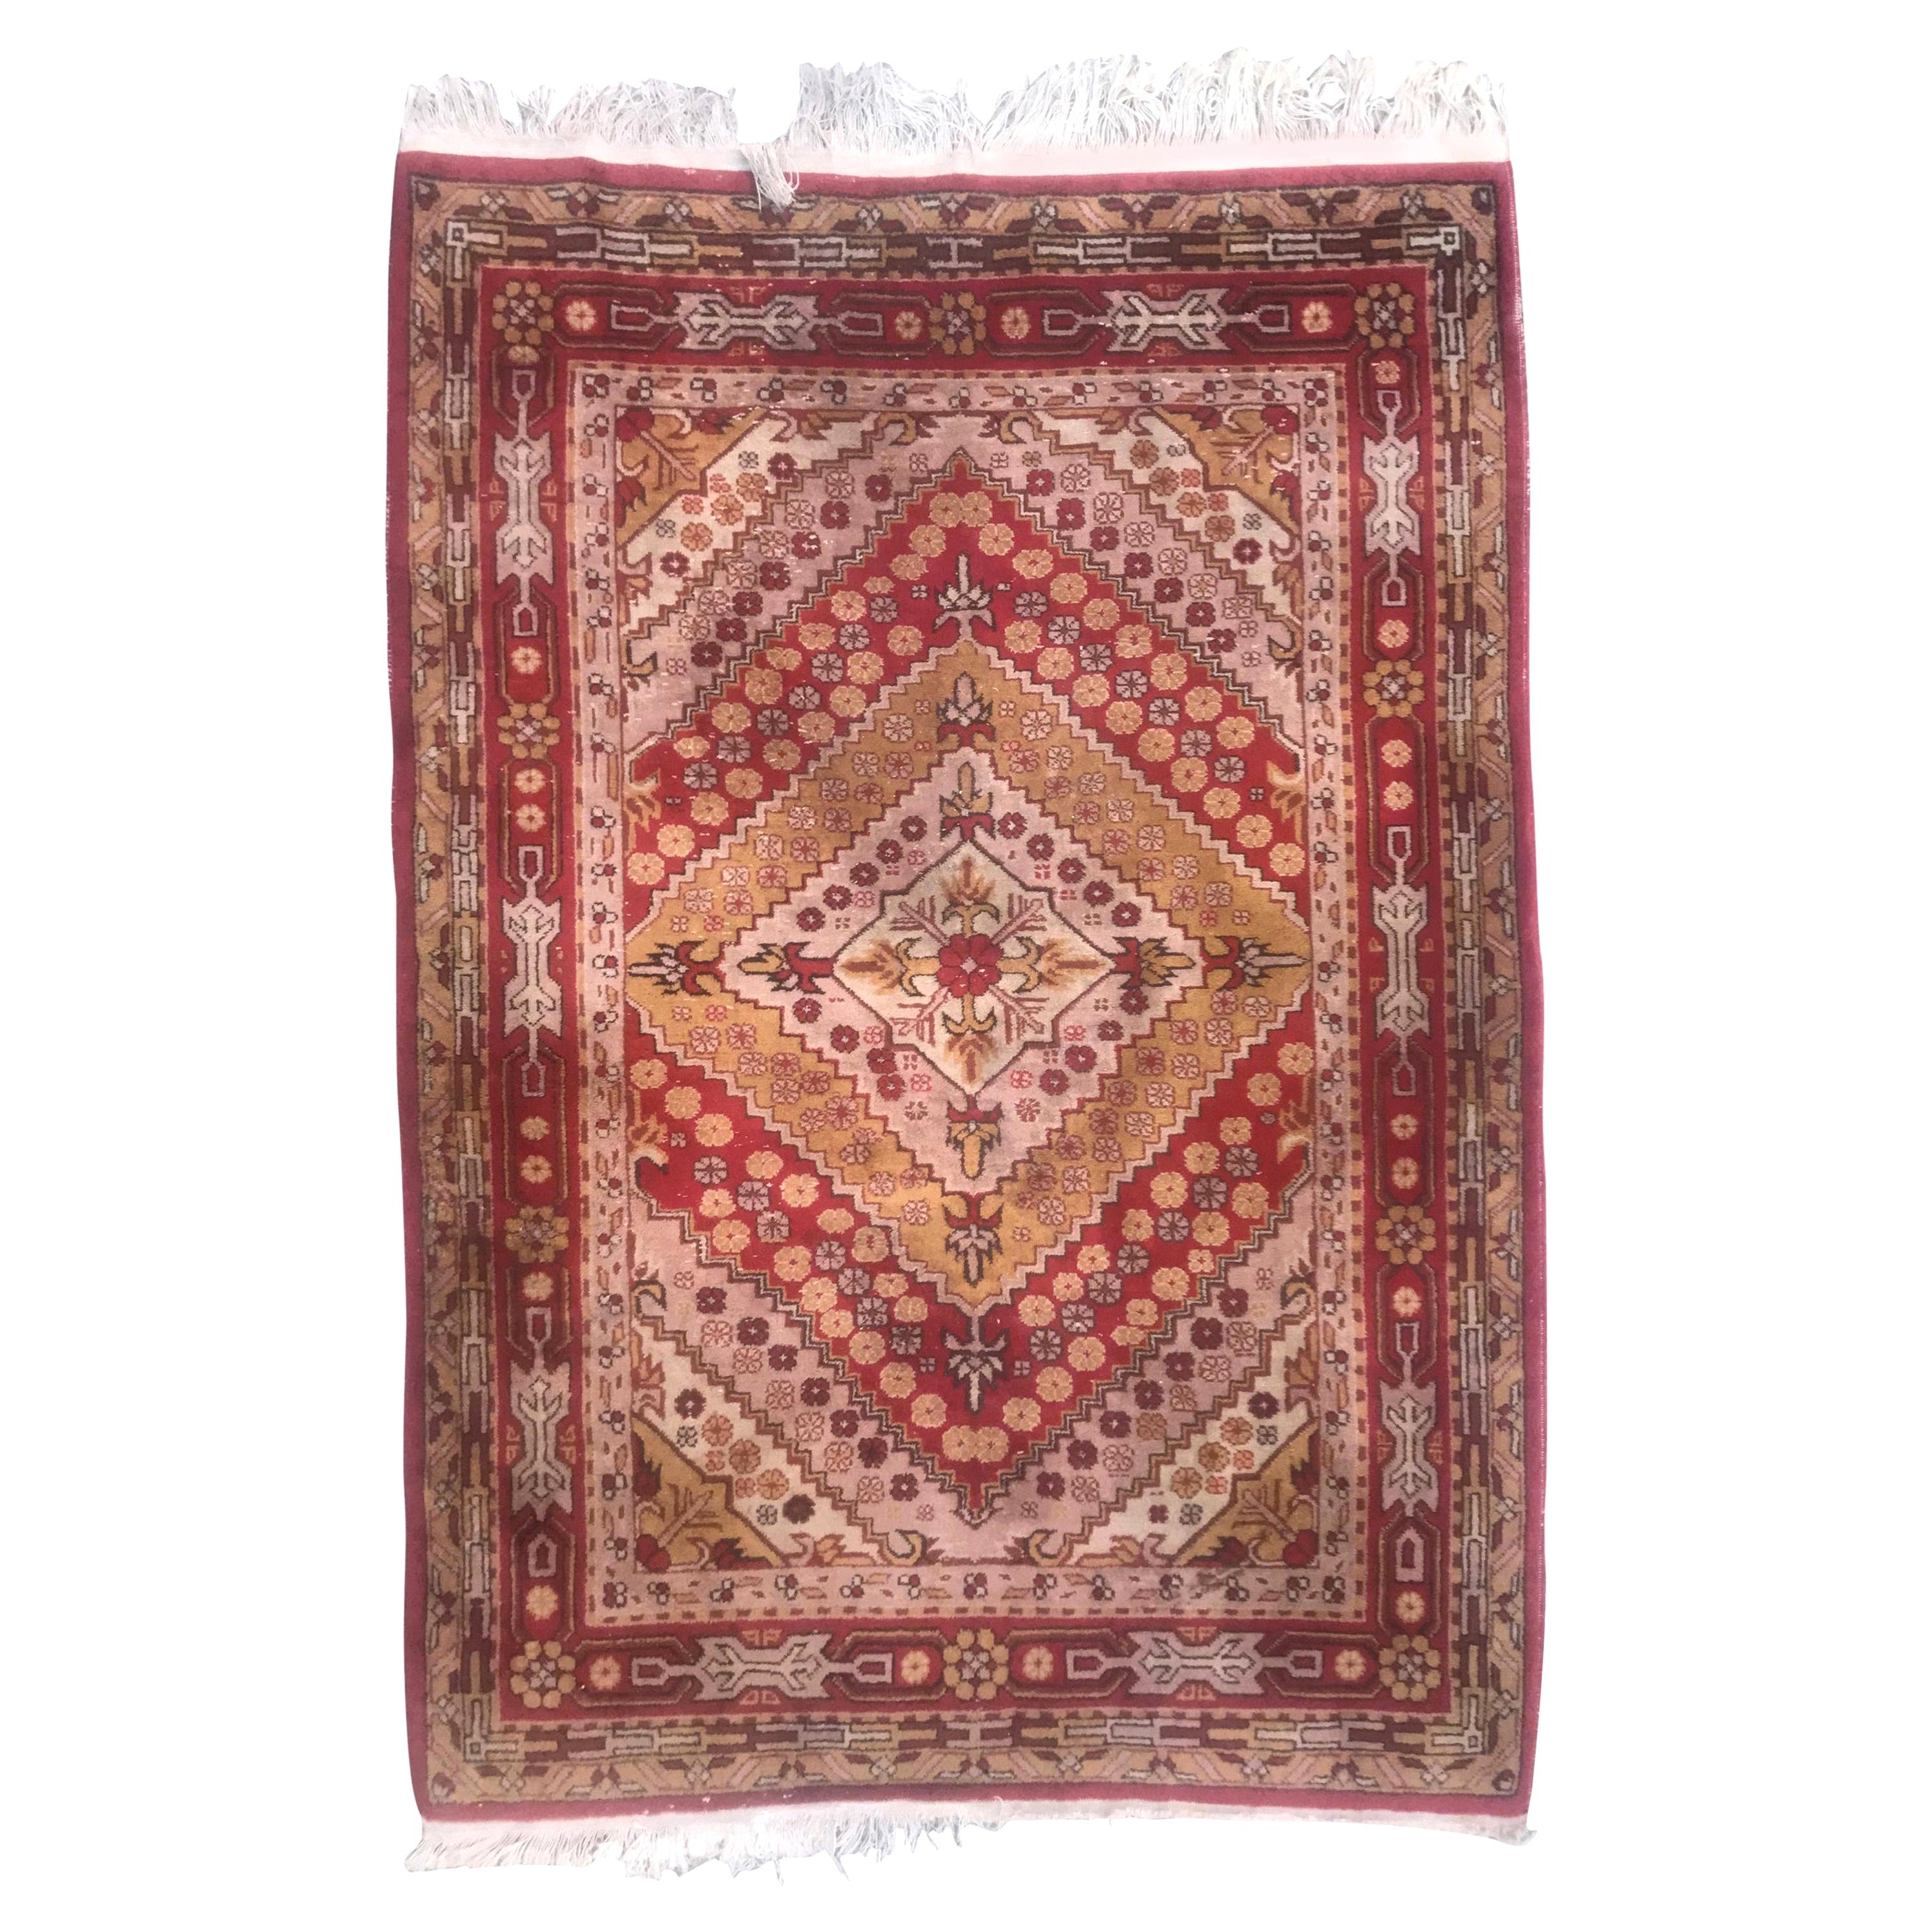 Bobyrugs schöner Vintage-Teppich aus Sinkiang Khotan